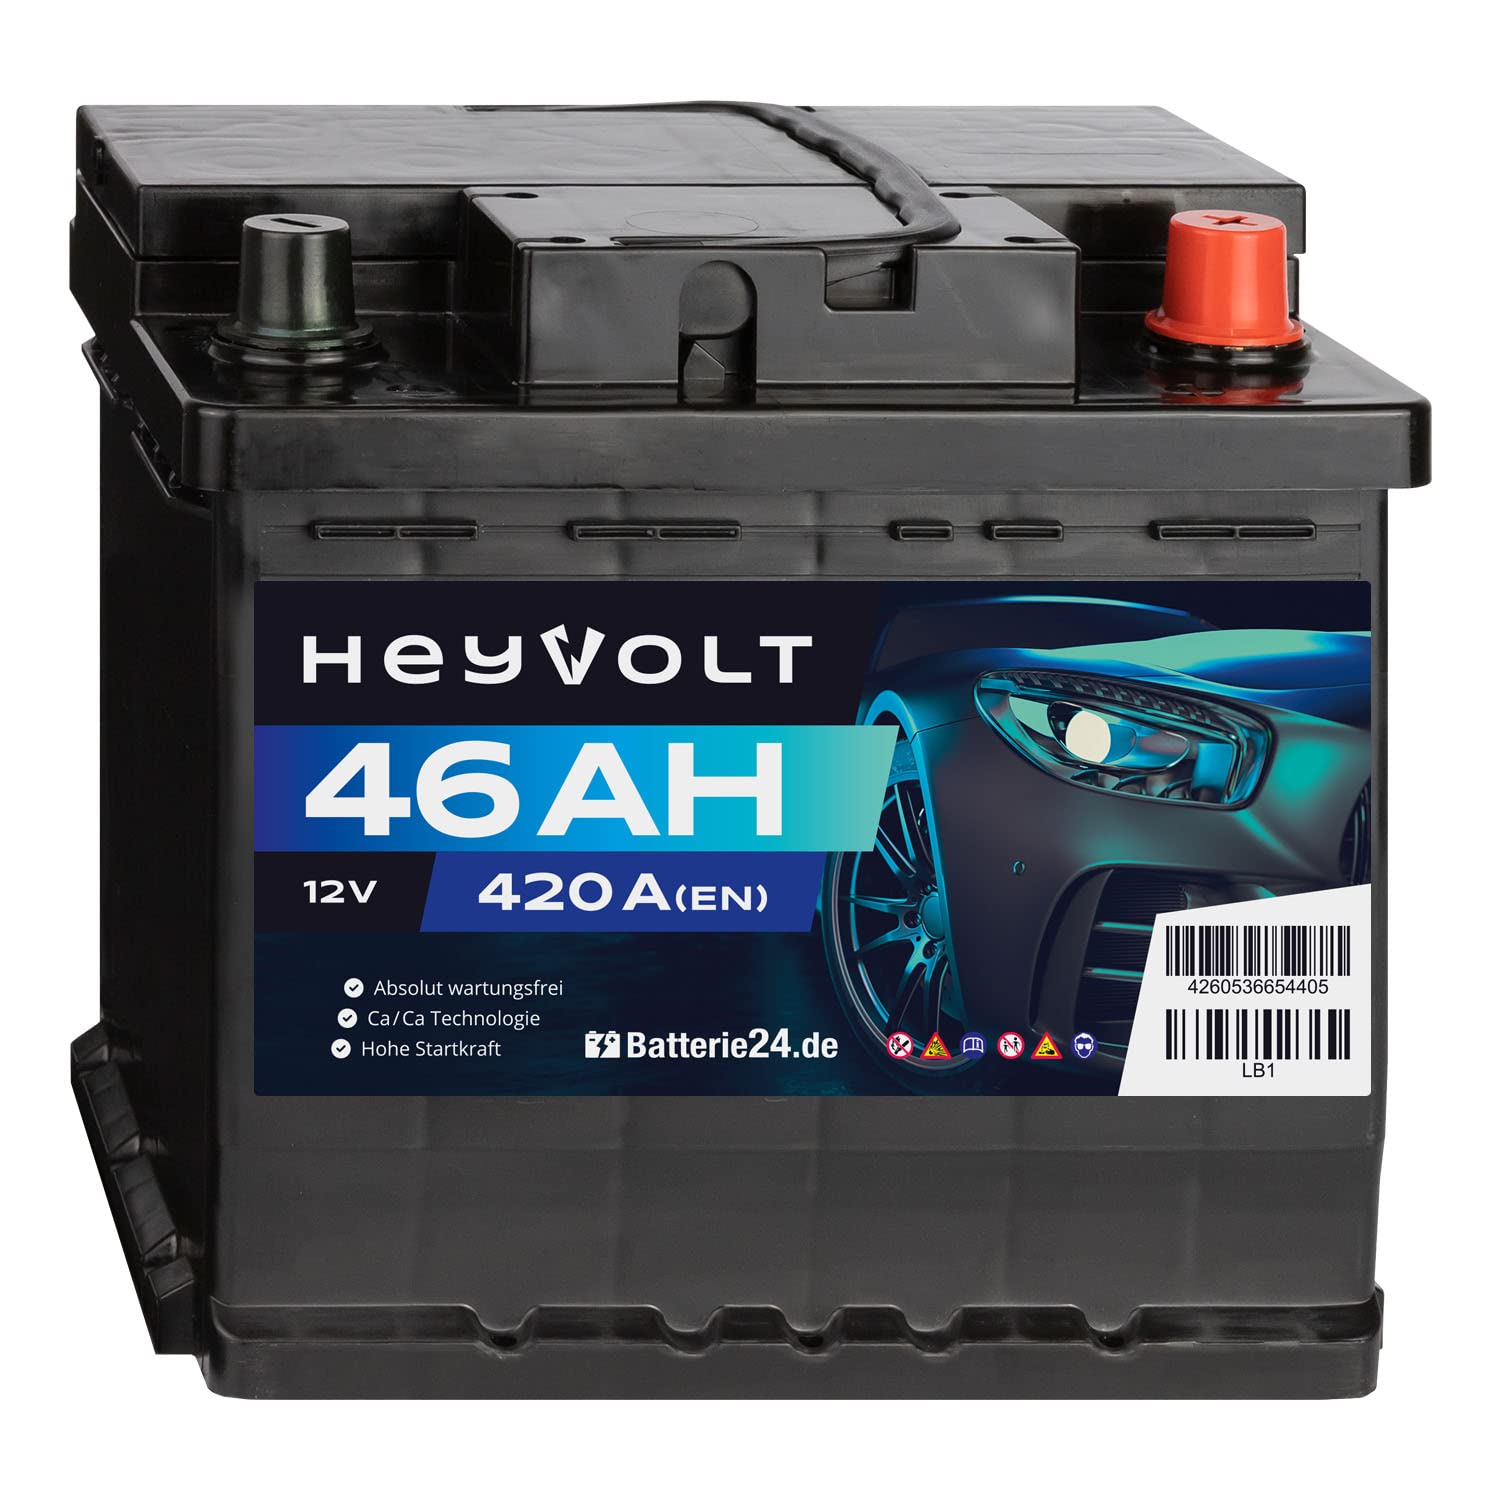 HeyVolt Autobatterie 12V 46Ah 420A/EN Starterbatterie, absolut wartungsfrei ersetzt 36Ah 41Ah 43Ah 44Ah 46Ah von Batterie24.de